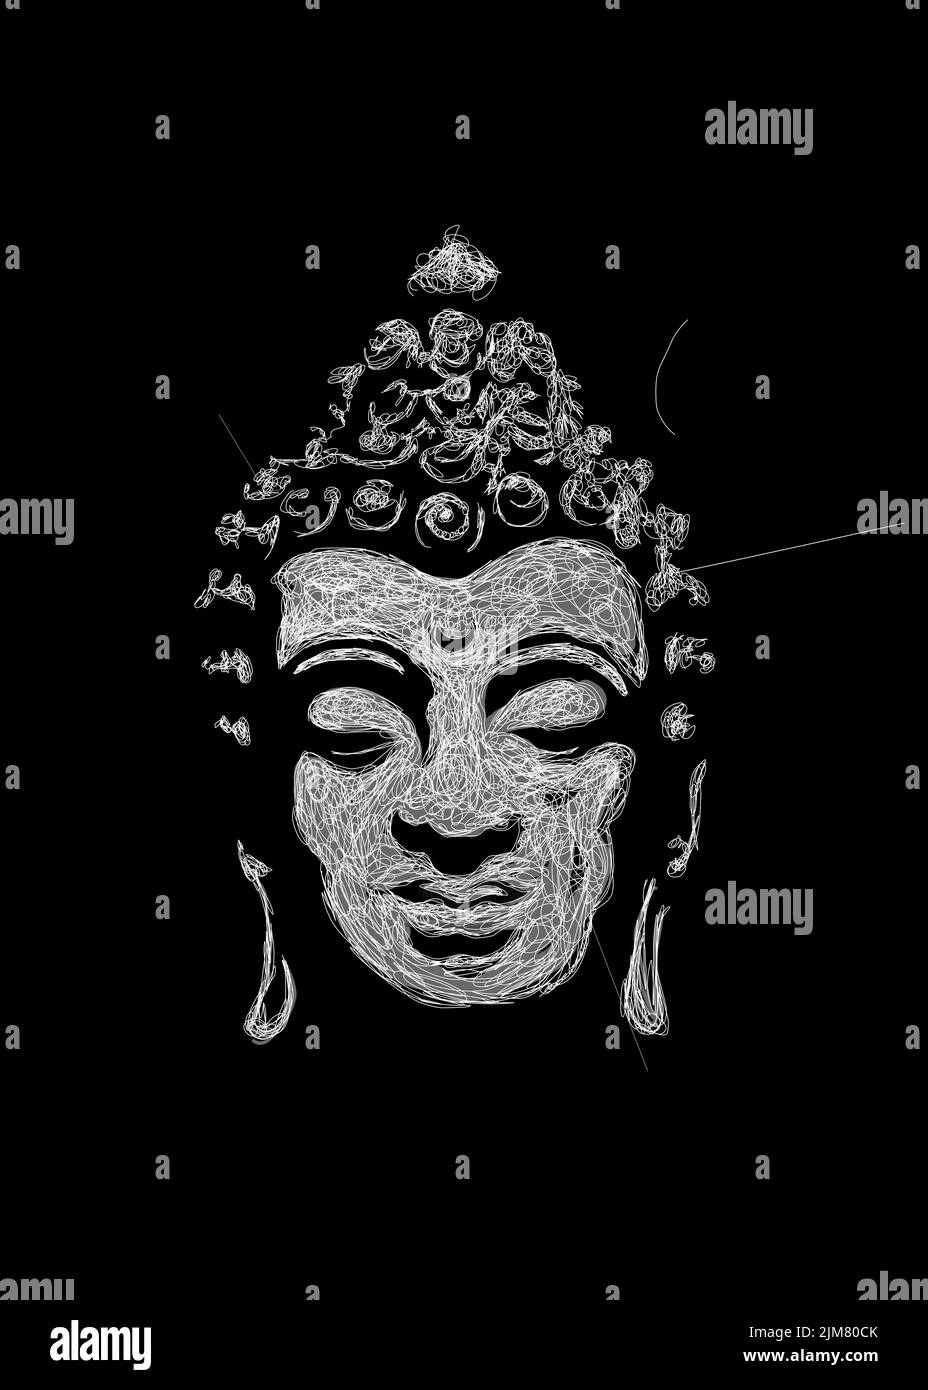 Dessin vertical en niveaux de gris d'un portrait de Bouddha sur fond noir Banque D'Images